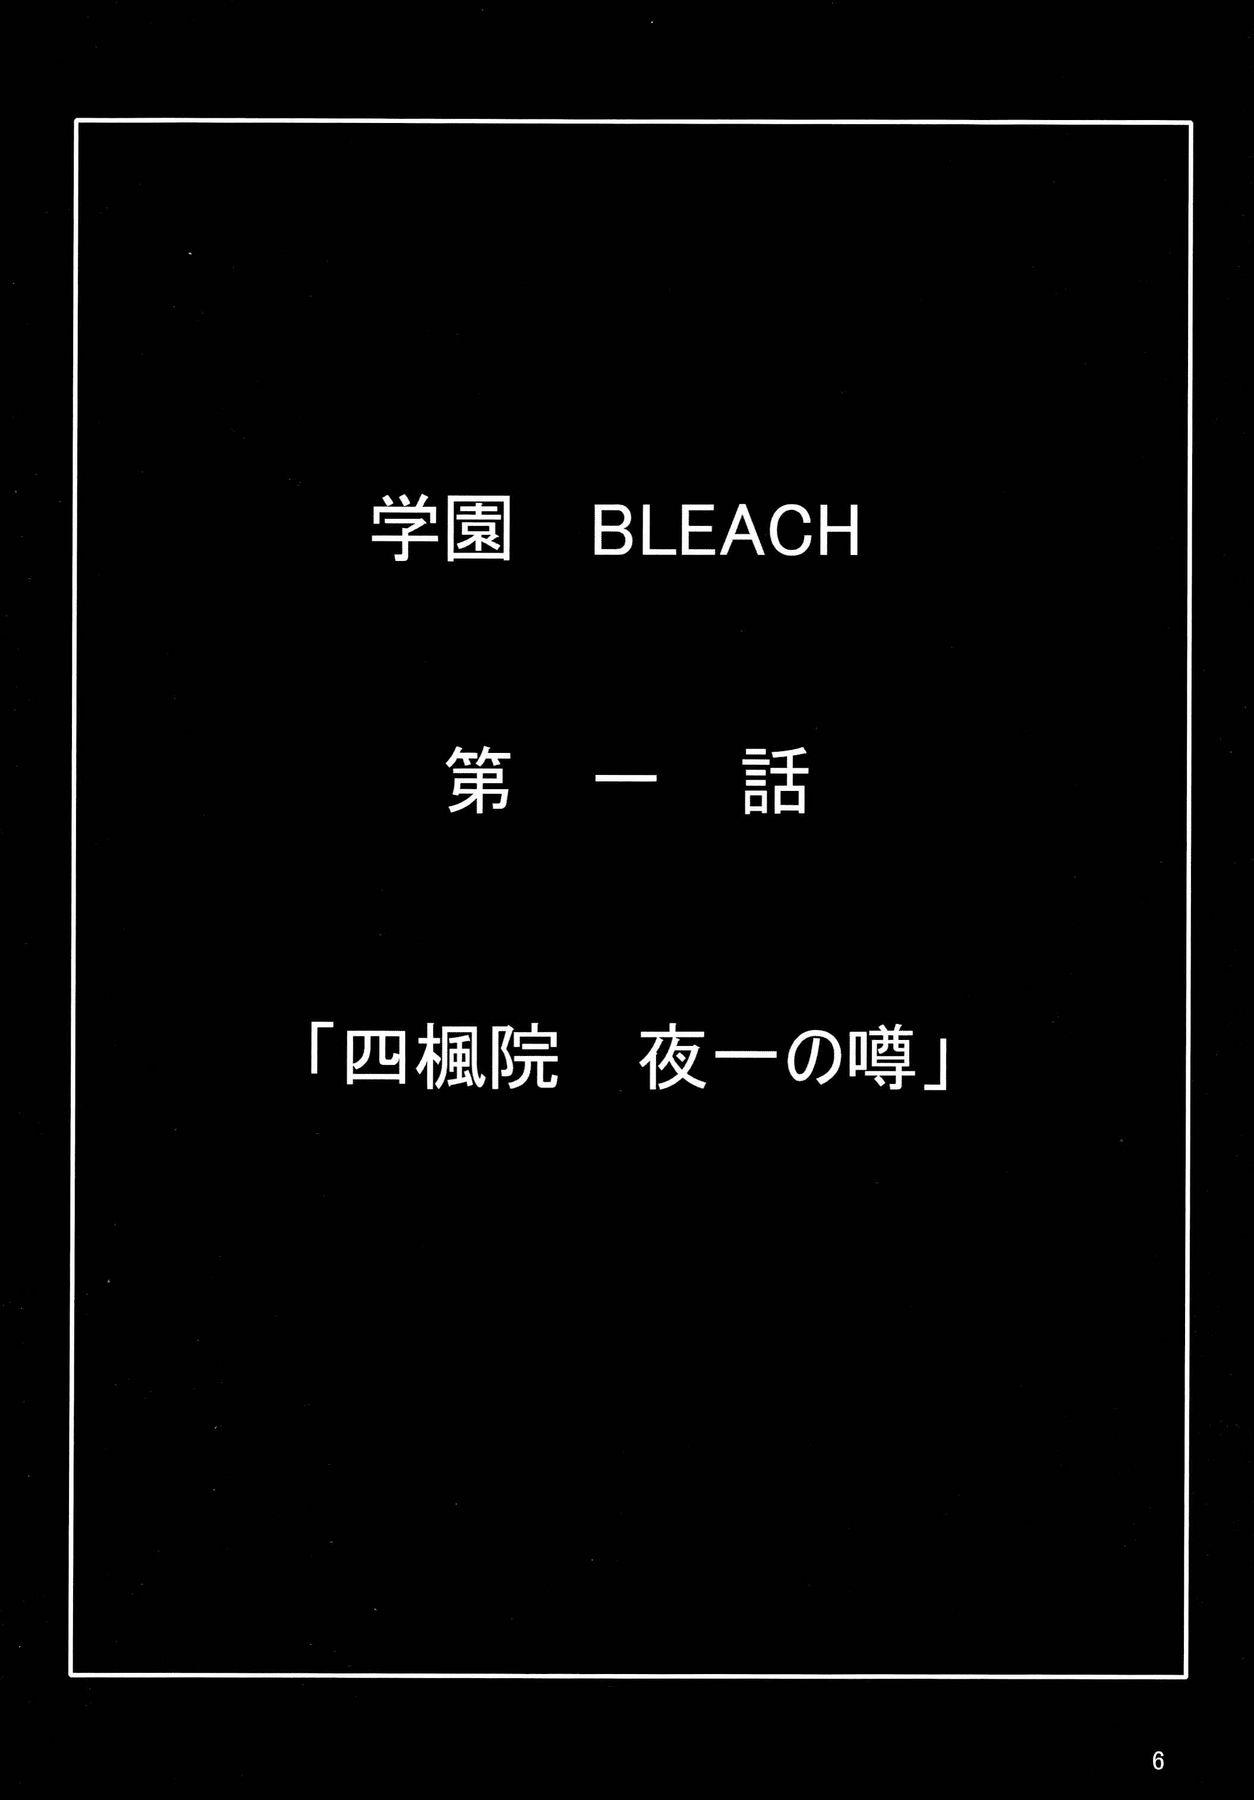 Mamando Benten Kairaku 7 - Bleach Gemidos - Page 5